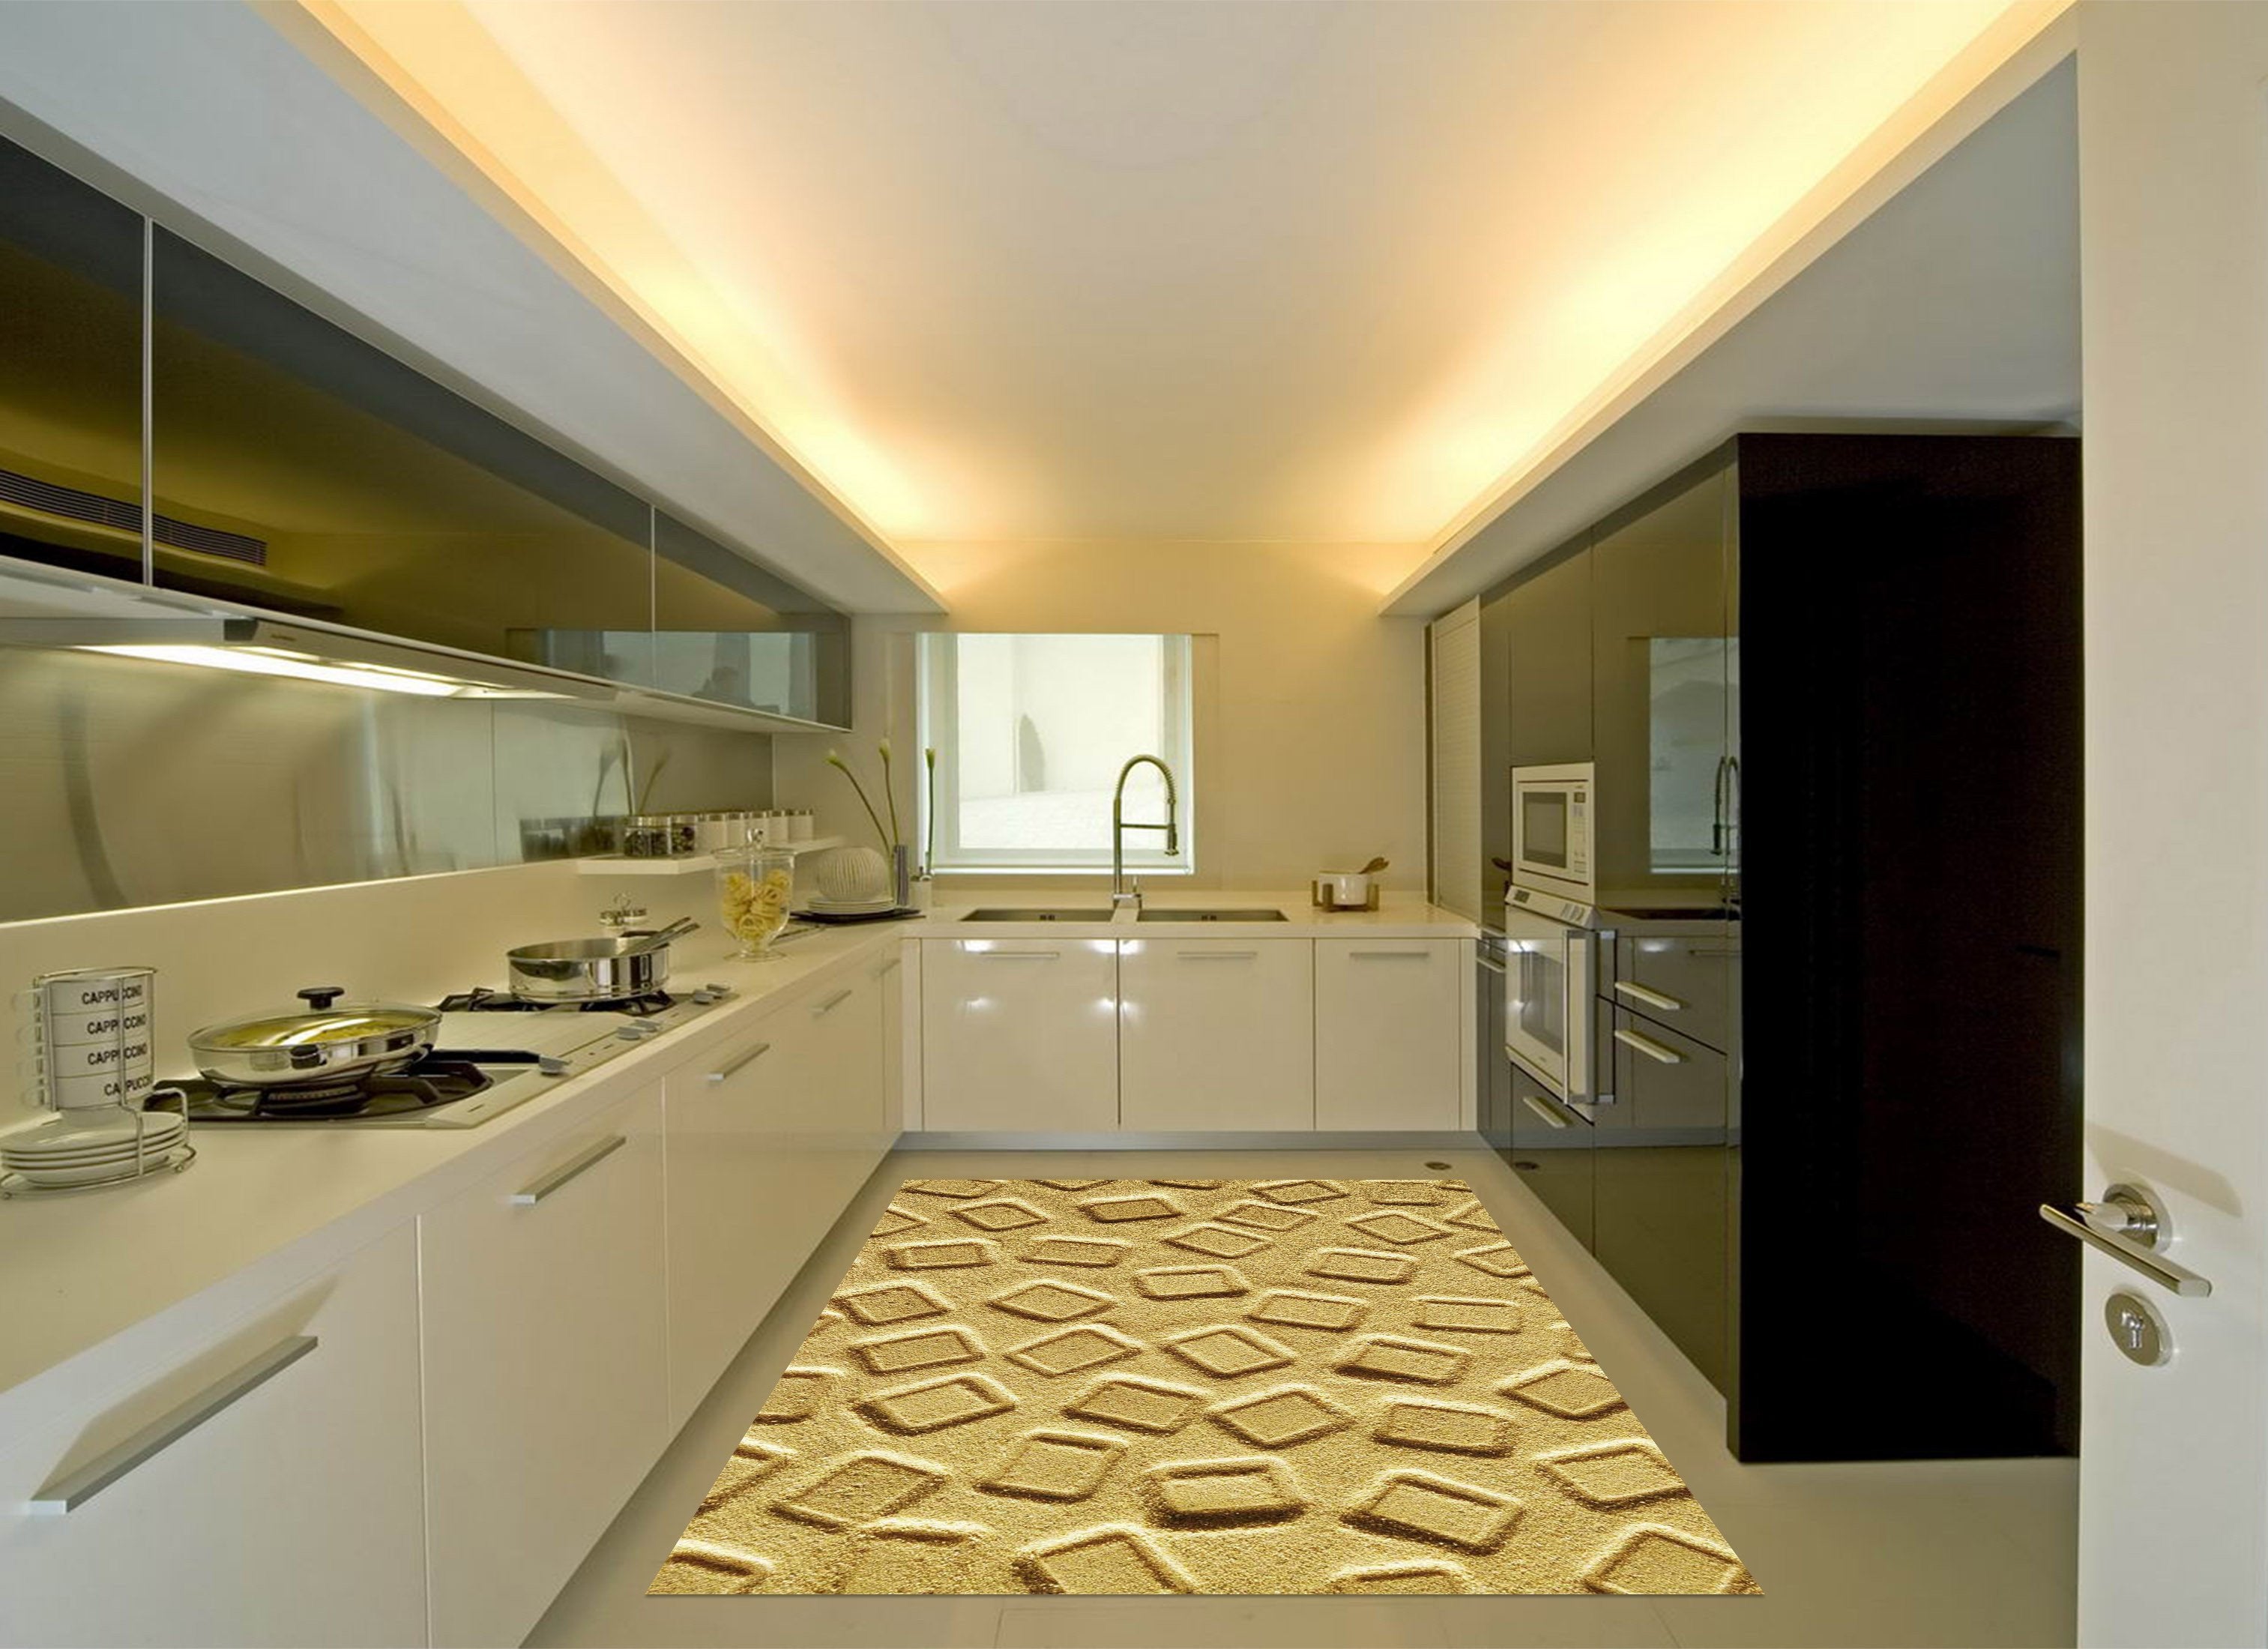 3D Sands Pattern Kitchen Mat Floor Mural Wallpaper AJ Wallpaper 